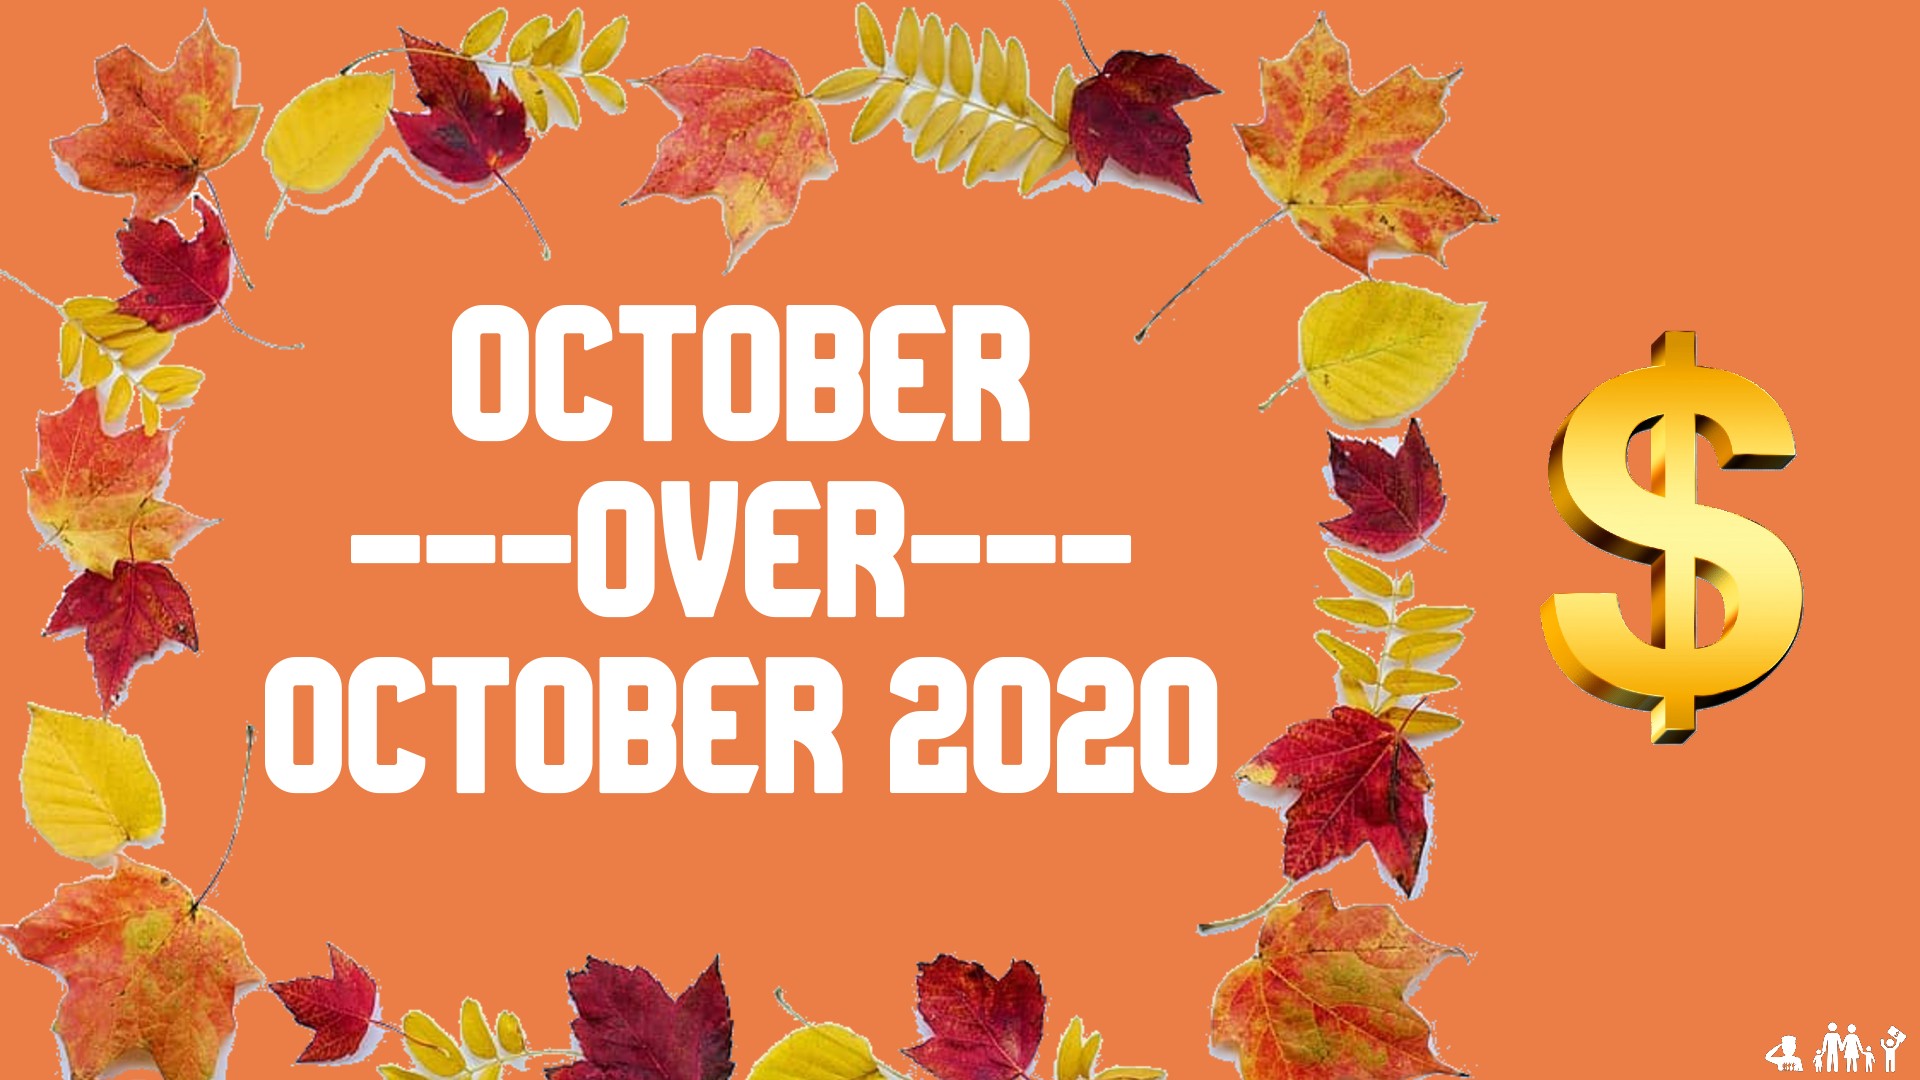 October Over October Update 2020